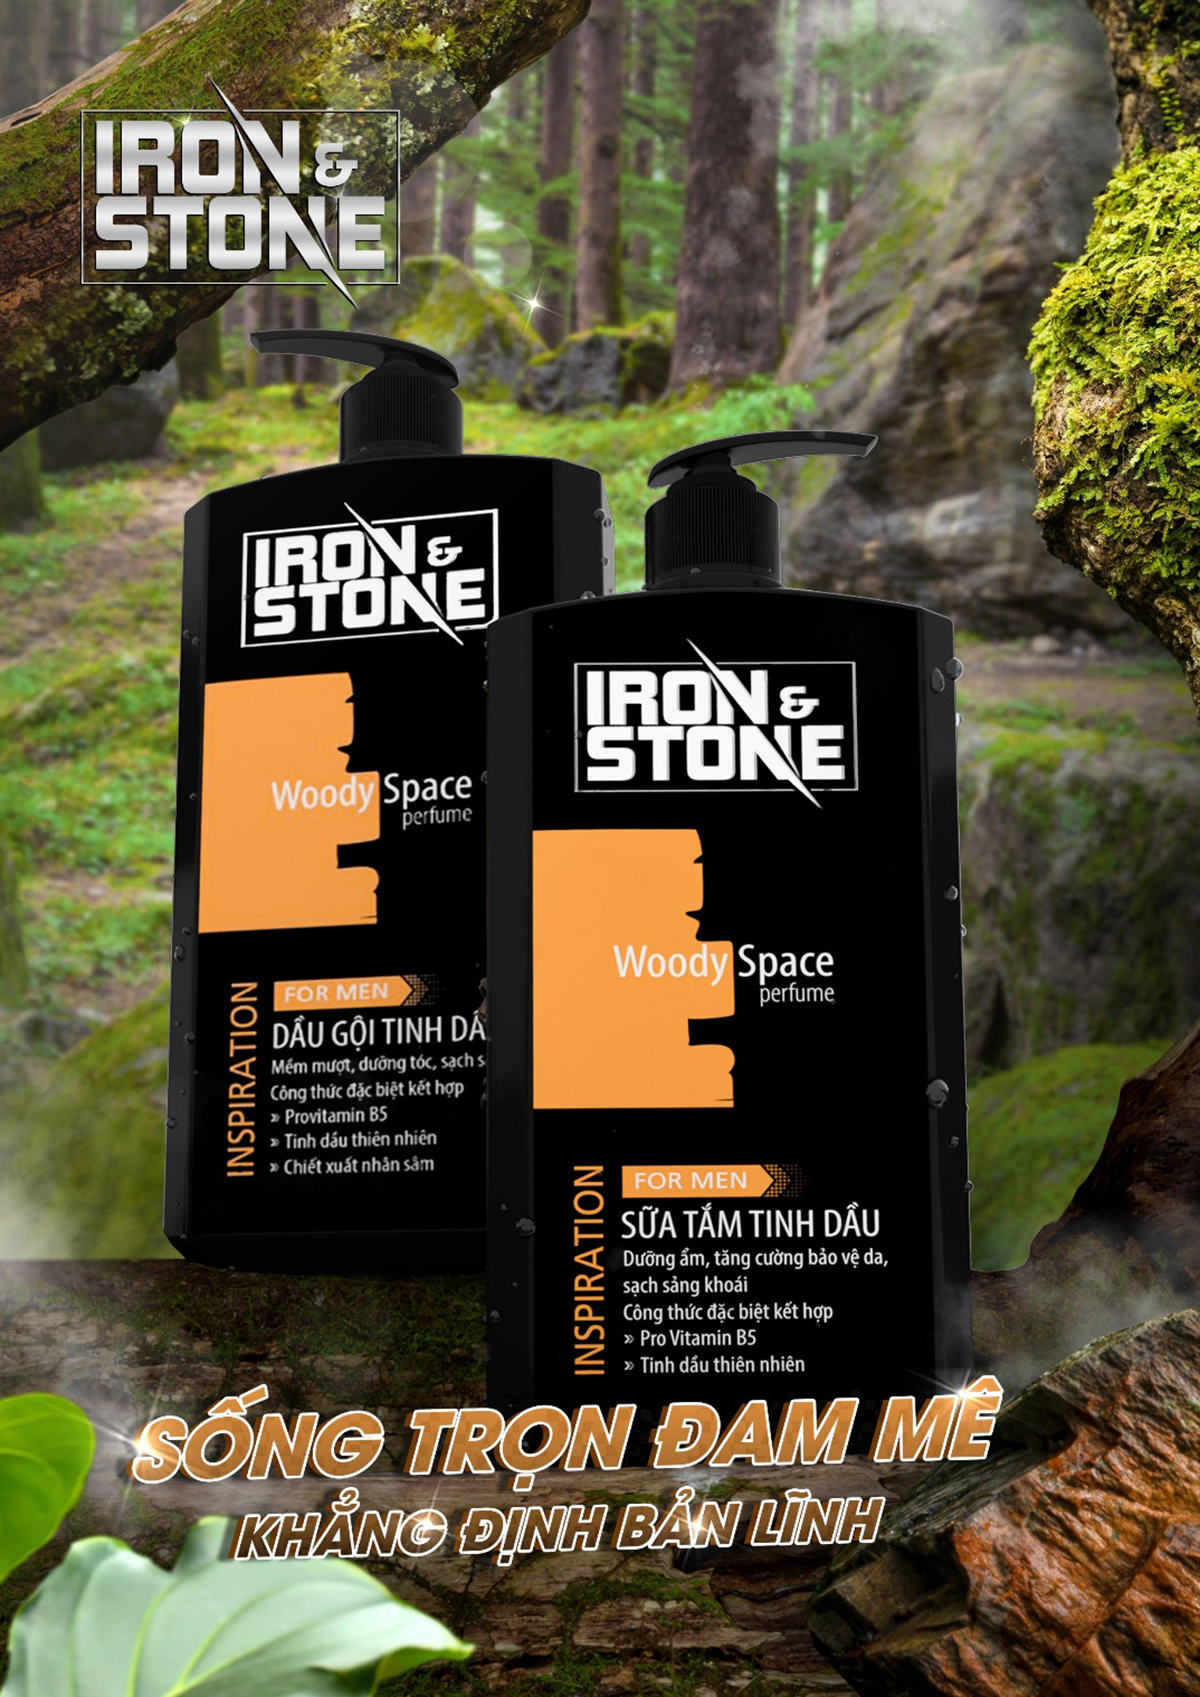 Iron & Stone - Inspiration, Khơi nguồn cảm hứng sáng tạo